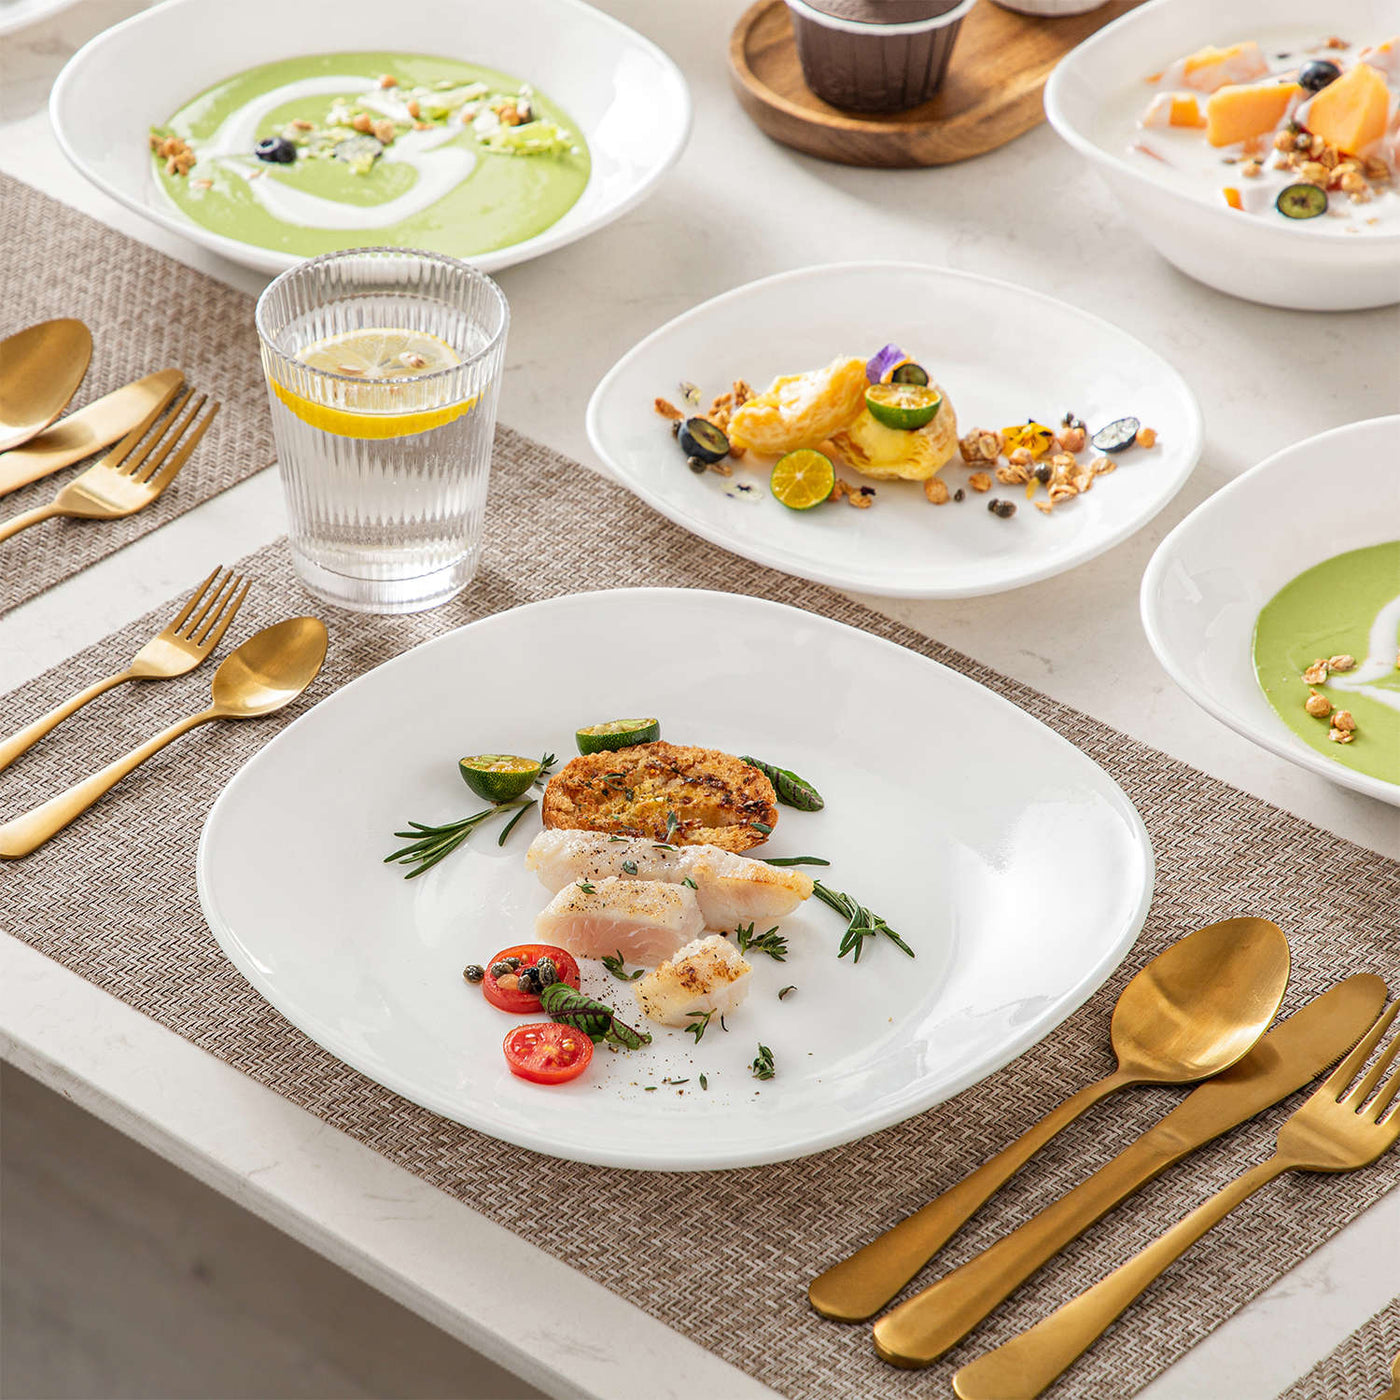 MALACASA Dinnerware Sets, 24-Piece Porcelain Square